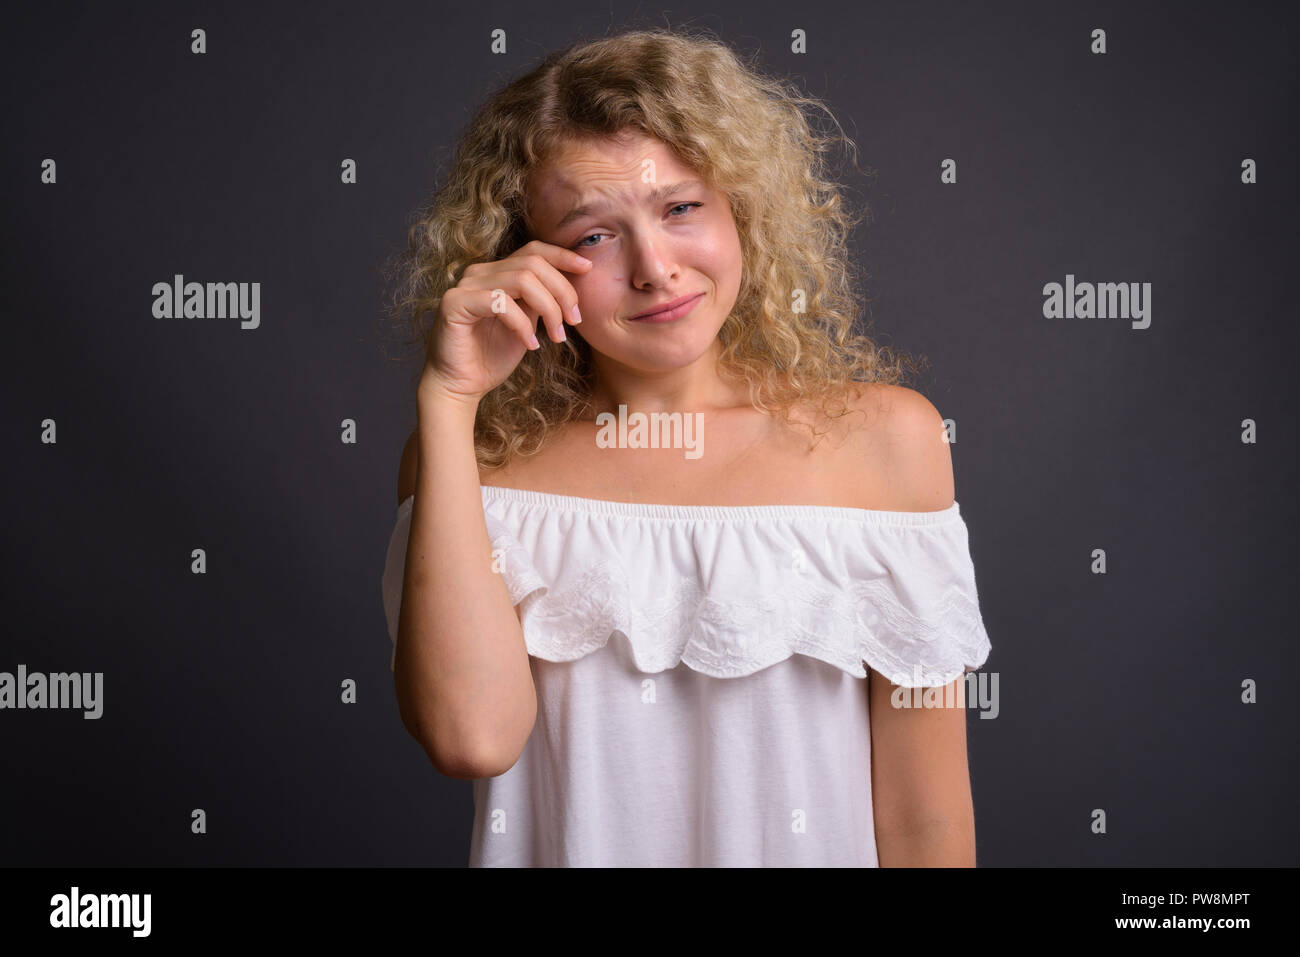 Belle jeune femme aux cheveux bouclés blonds contre gray background Banque D'Images